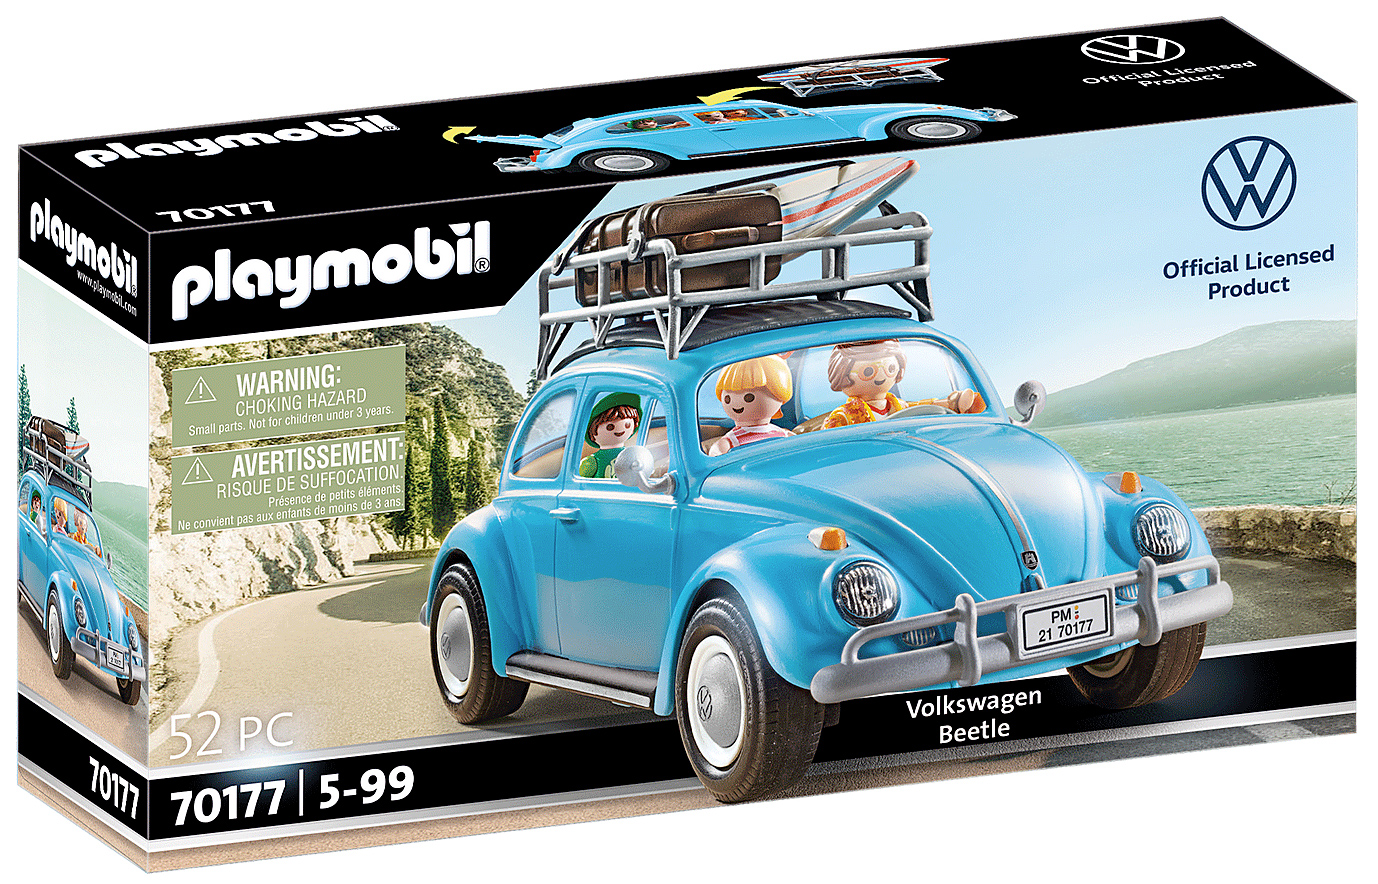 Fusca Playmobil Volkswagen Beetle Car